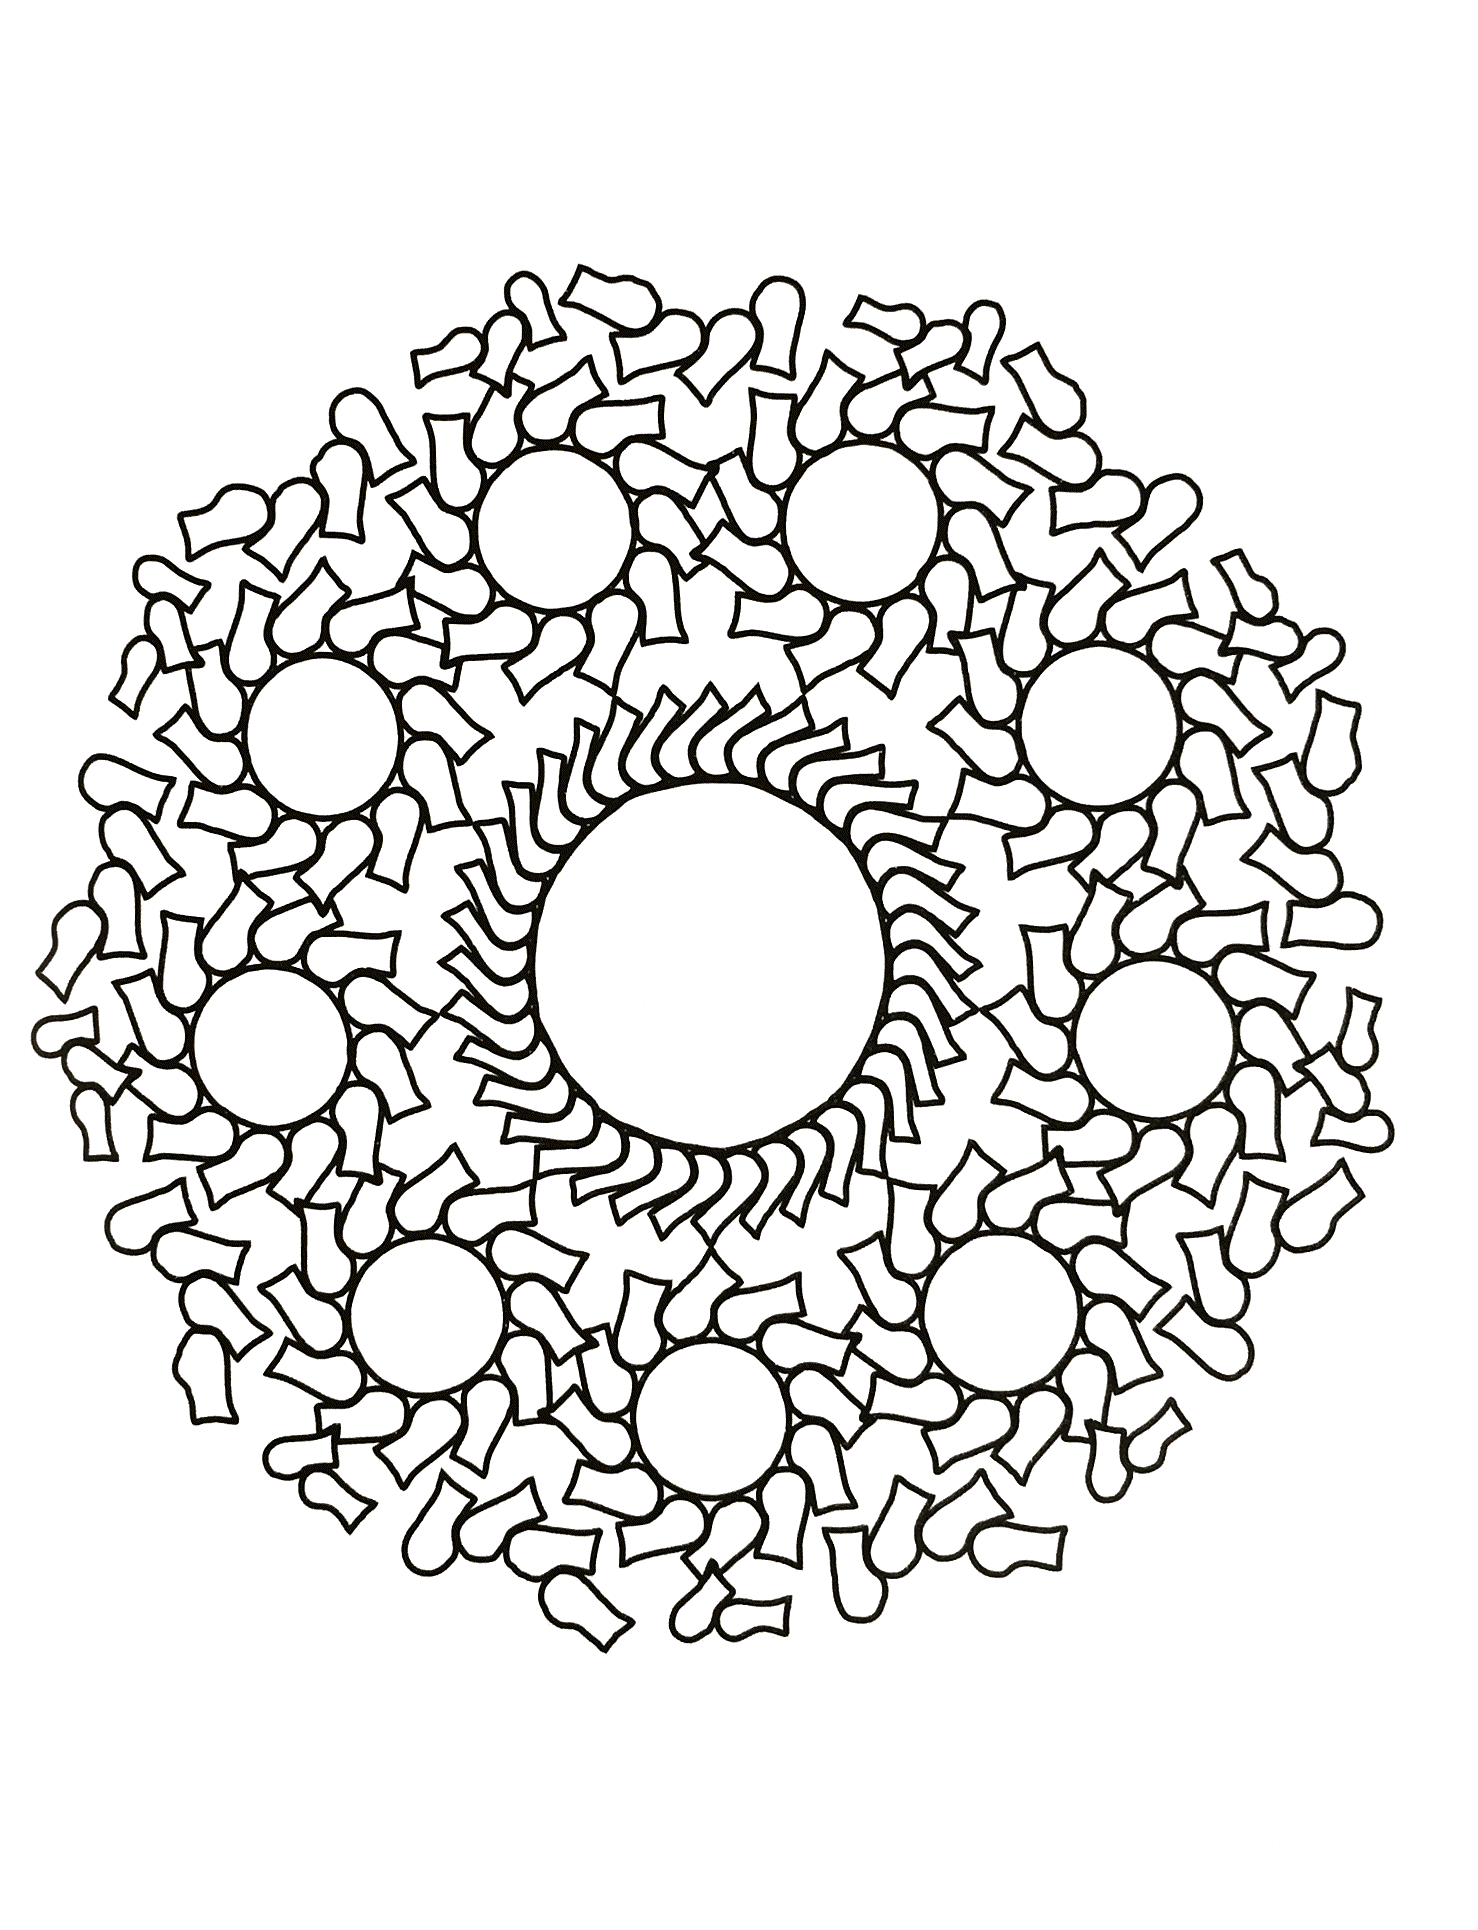 Un coloriage de Mandala pour les plus jeunes, faible niveau de difficulté. De larges zones facile à remplir.